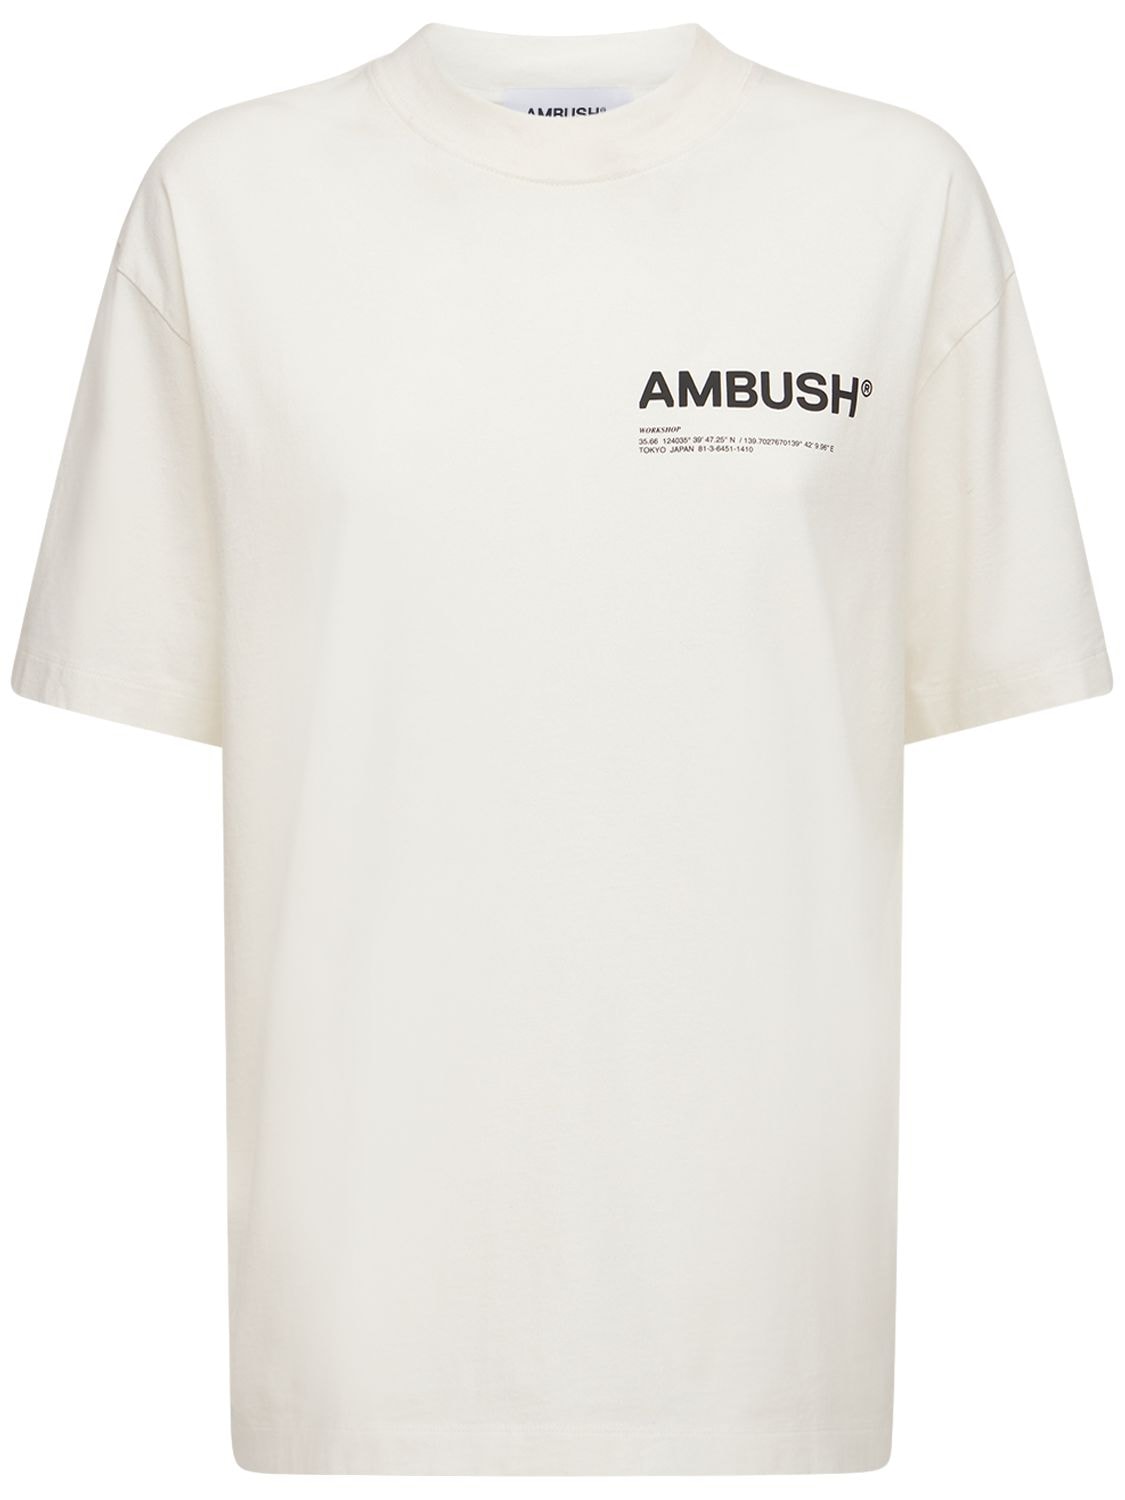 AMBUSH WORKSHOP LOGO棉质平纹针织T恤,74IY5J001-MDMXMA2